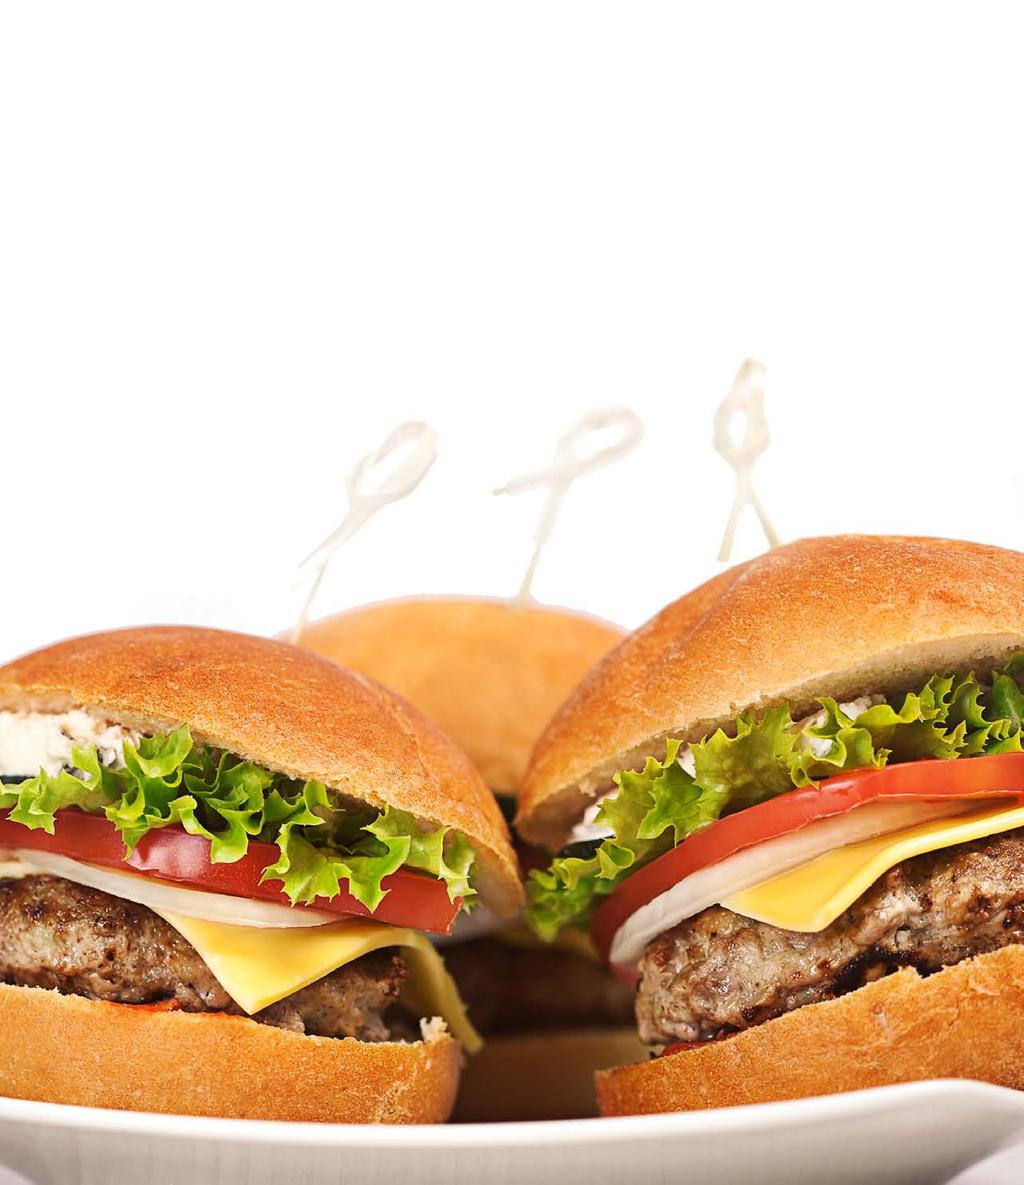 SMITH S PREMIUM BURGERS PREMIUM SEASONED BURGERS 284091 1.5 oz Premium Seasoned Slider 75/1.5oz 284075 2.5 oz Premium Seasoned Slider 120/2.5oz 298703 3.2 oz Premium Seasoned Burger 50/3.